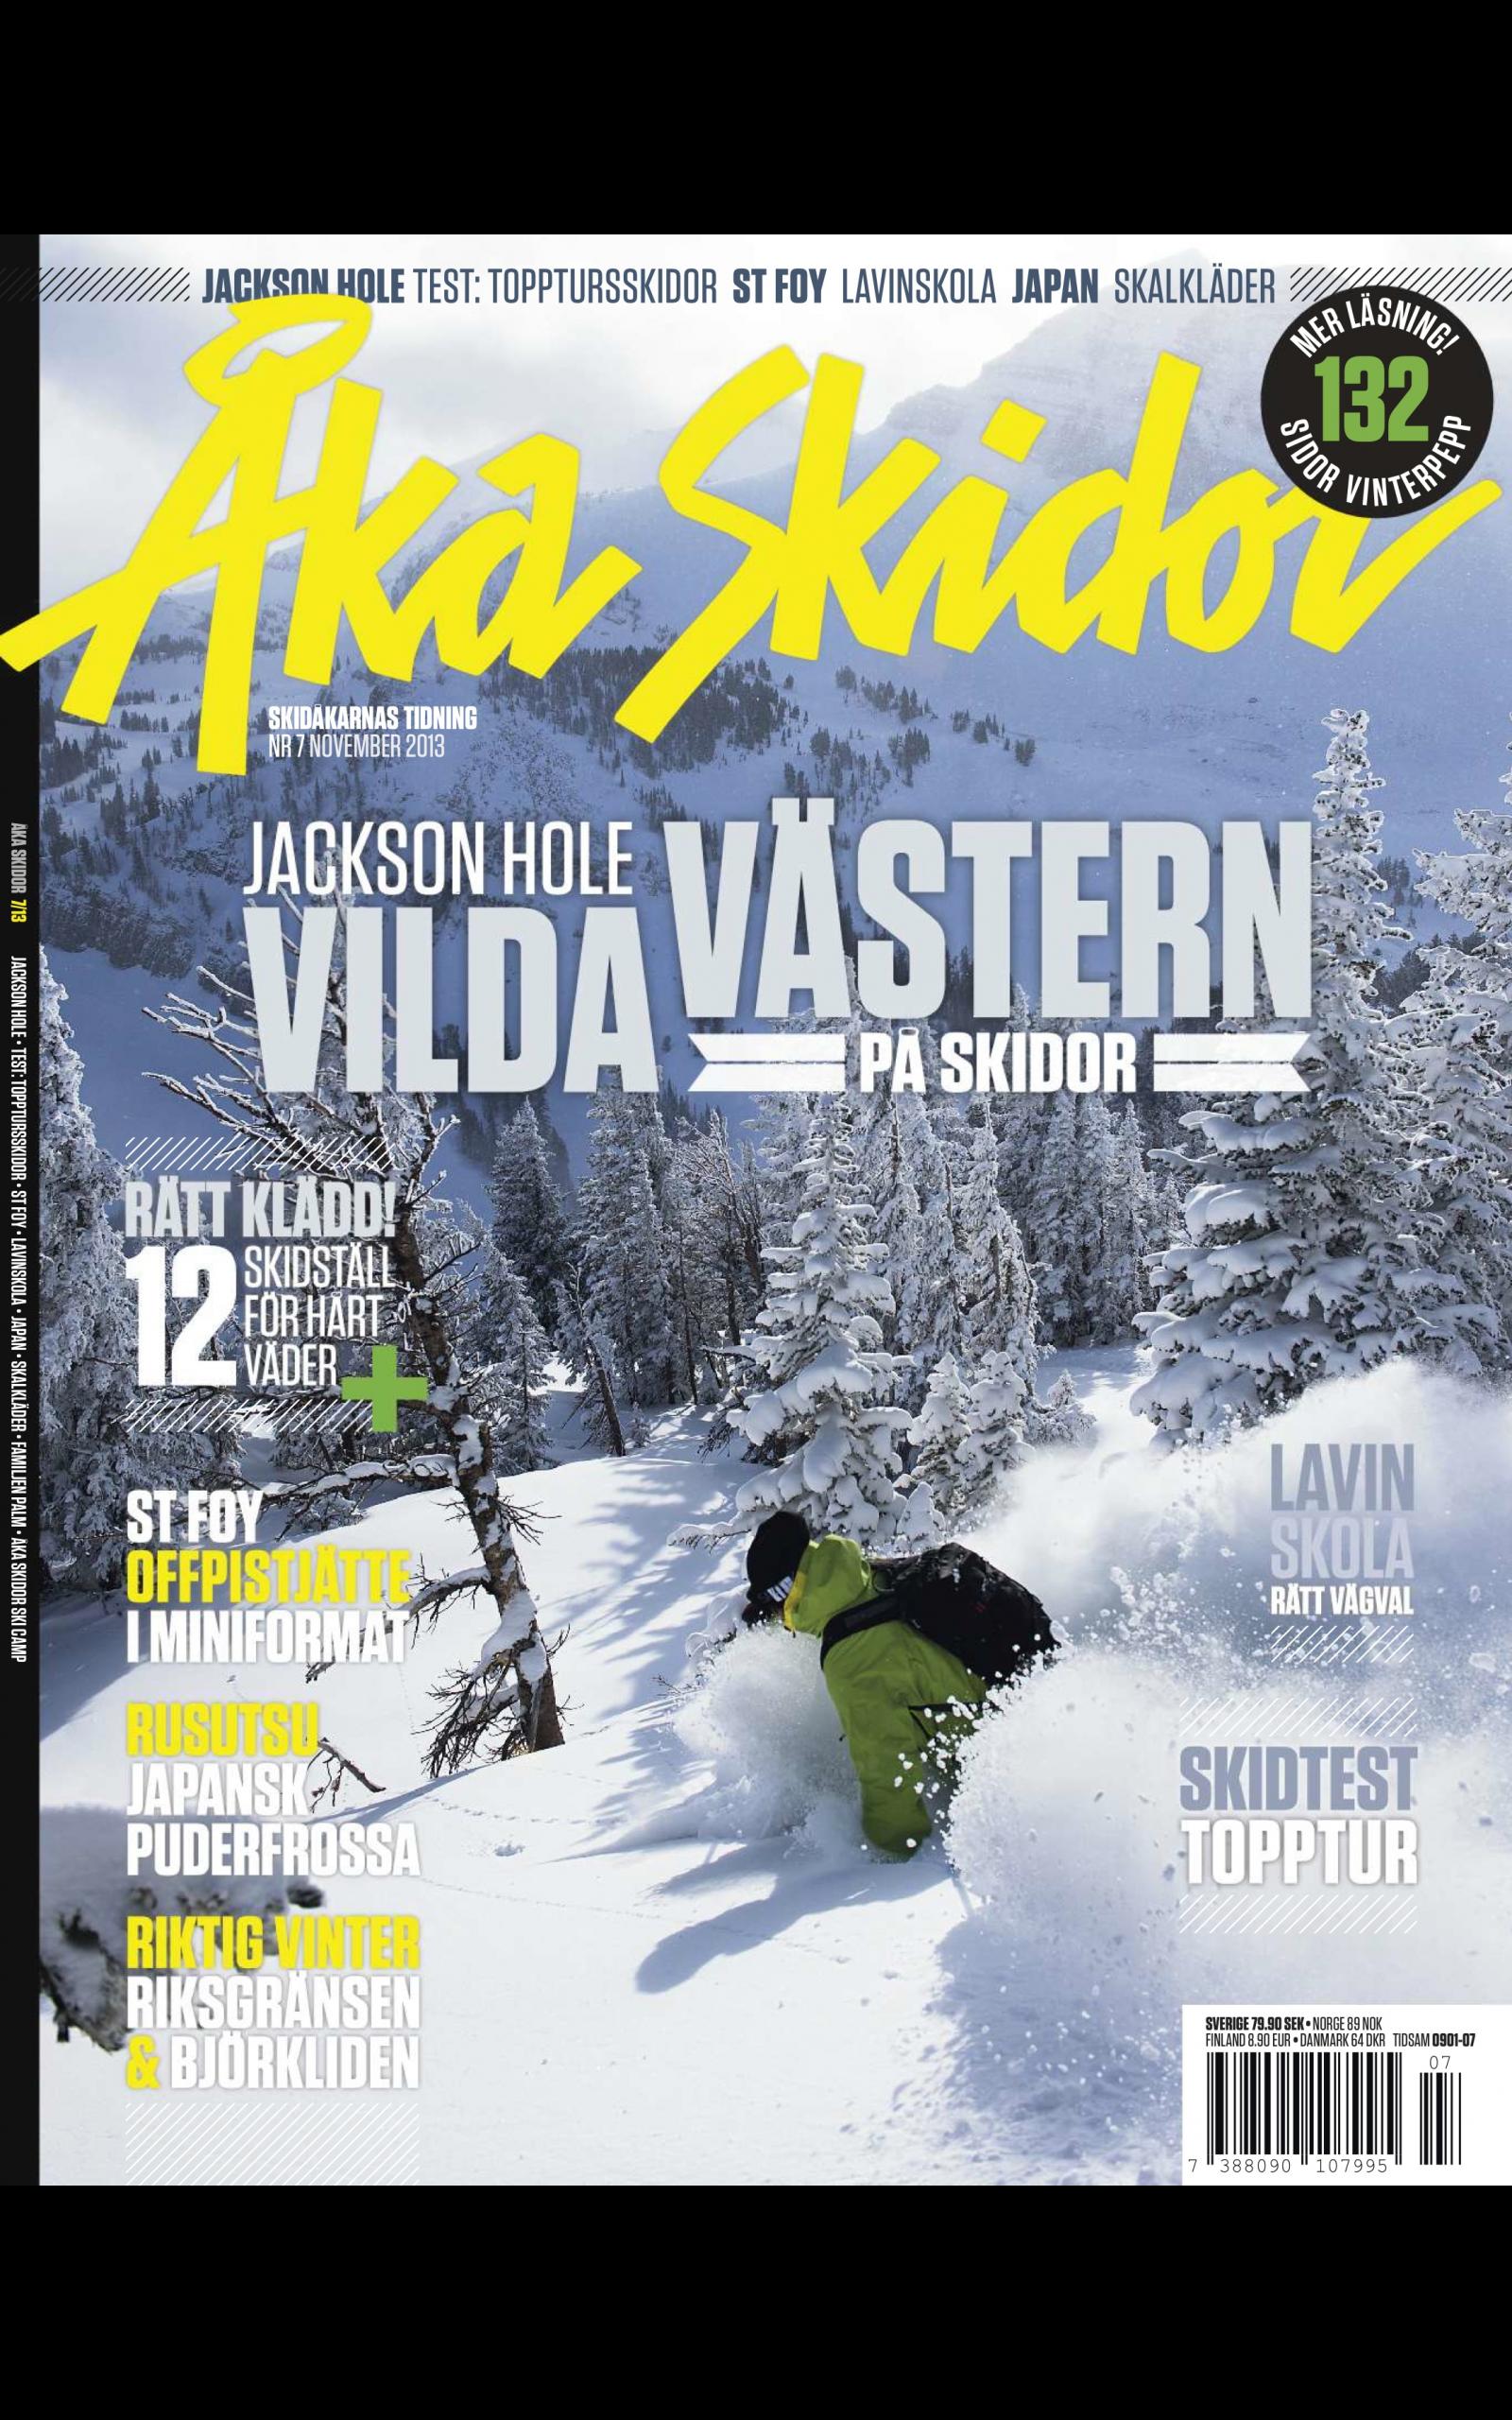 Åka Skidor for Android - APK Download